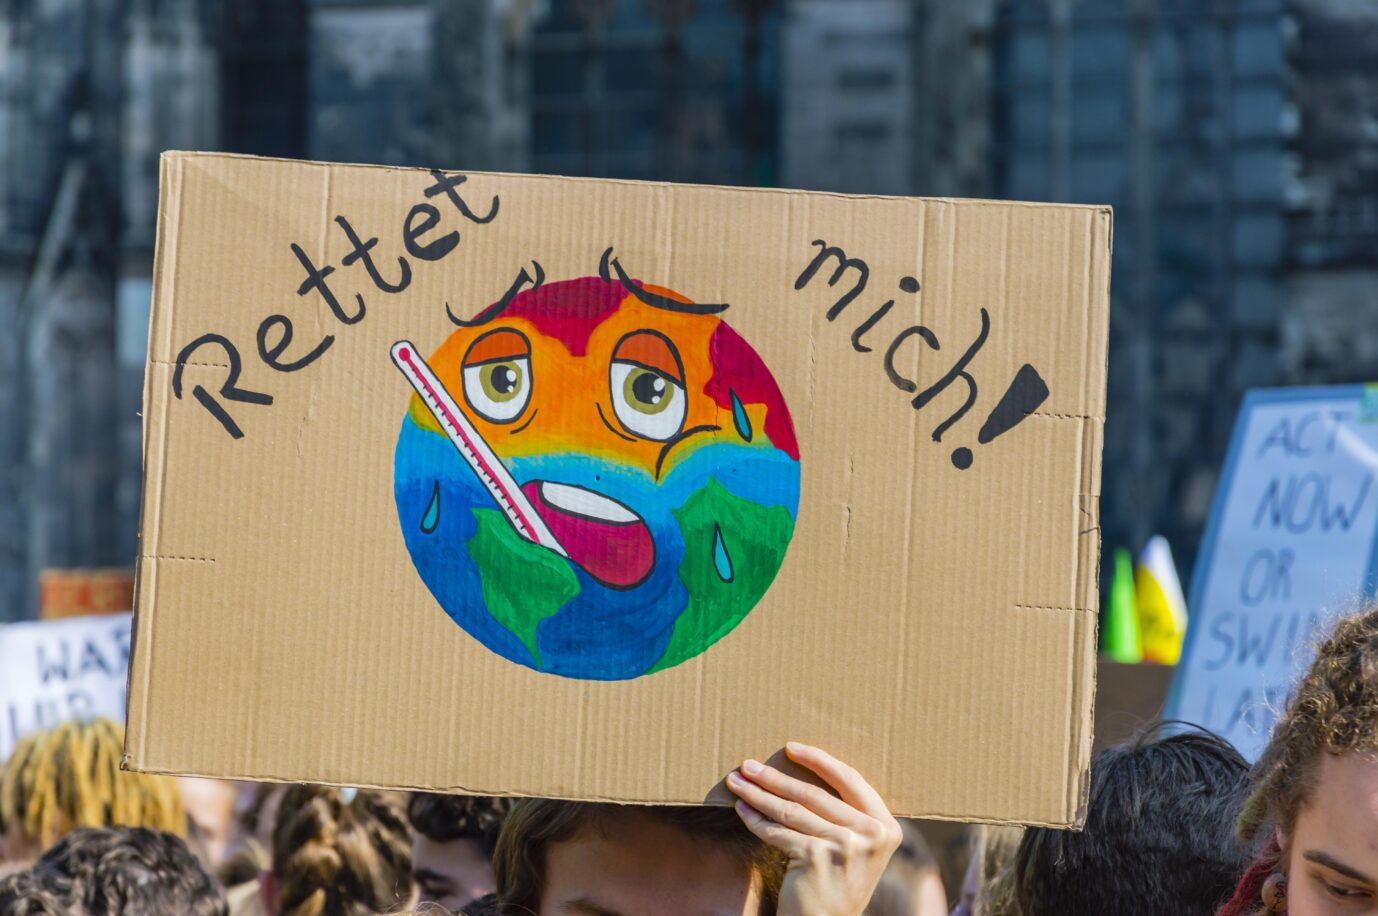 "Fridays for Future" demonstriert gegen den Klimawandel (Symbolbild) Foto: picture alliance / imageBROKER | Walter G. Allgöwer